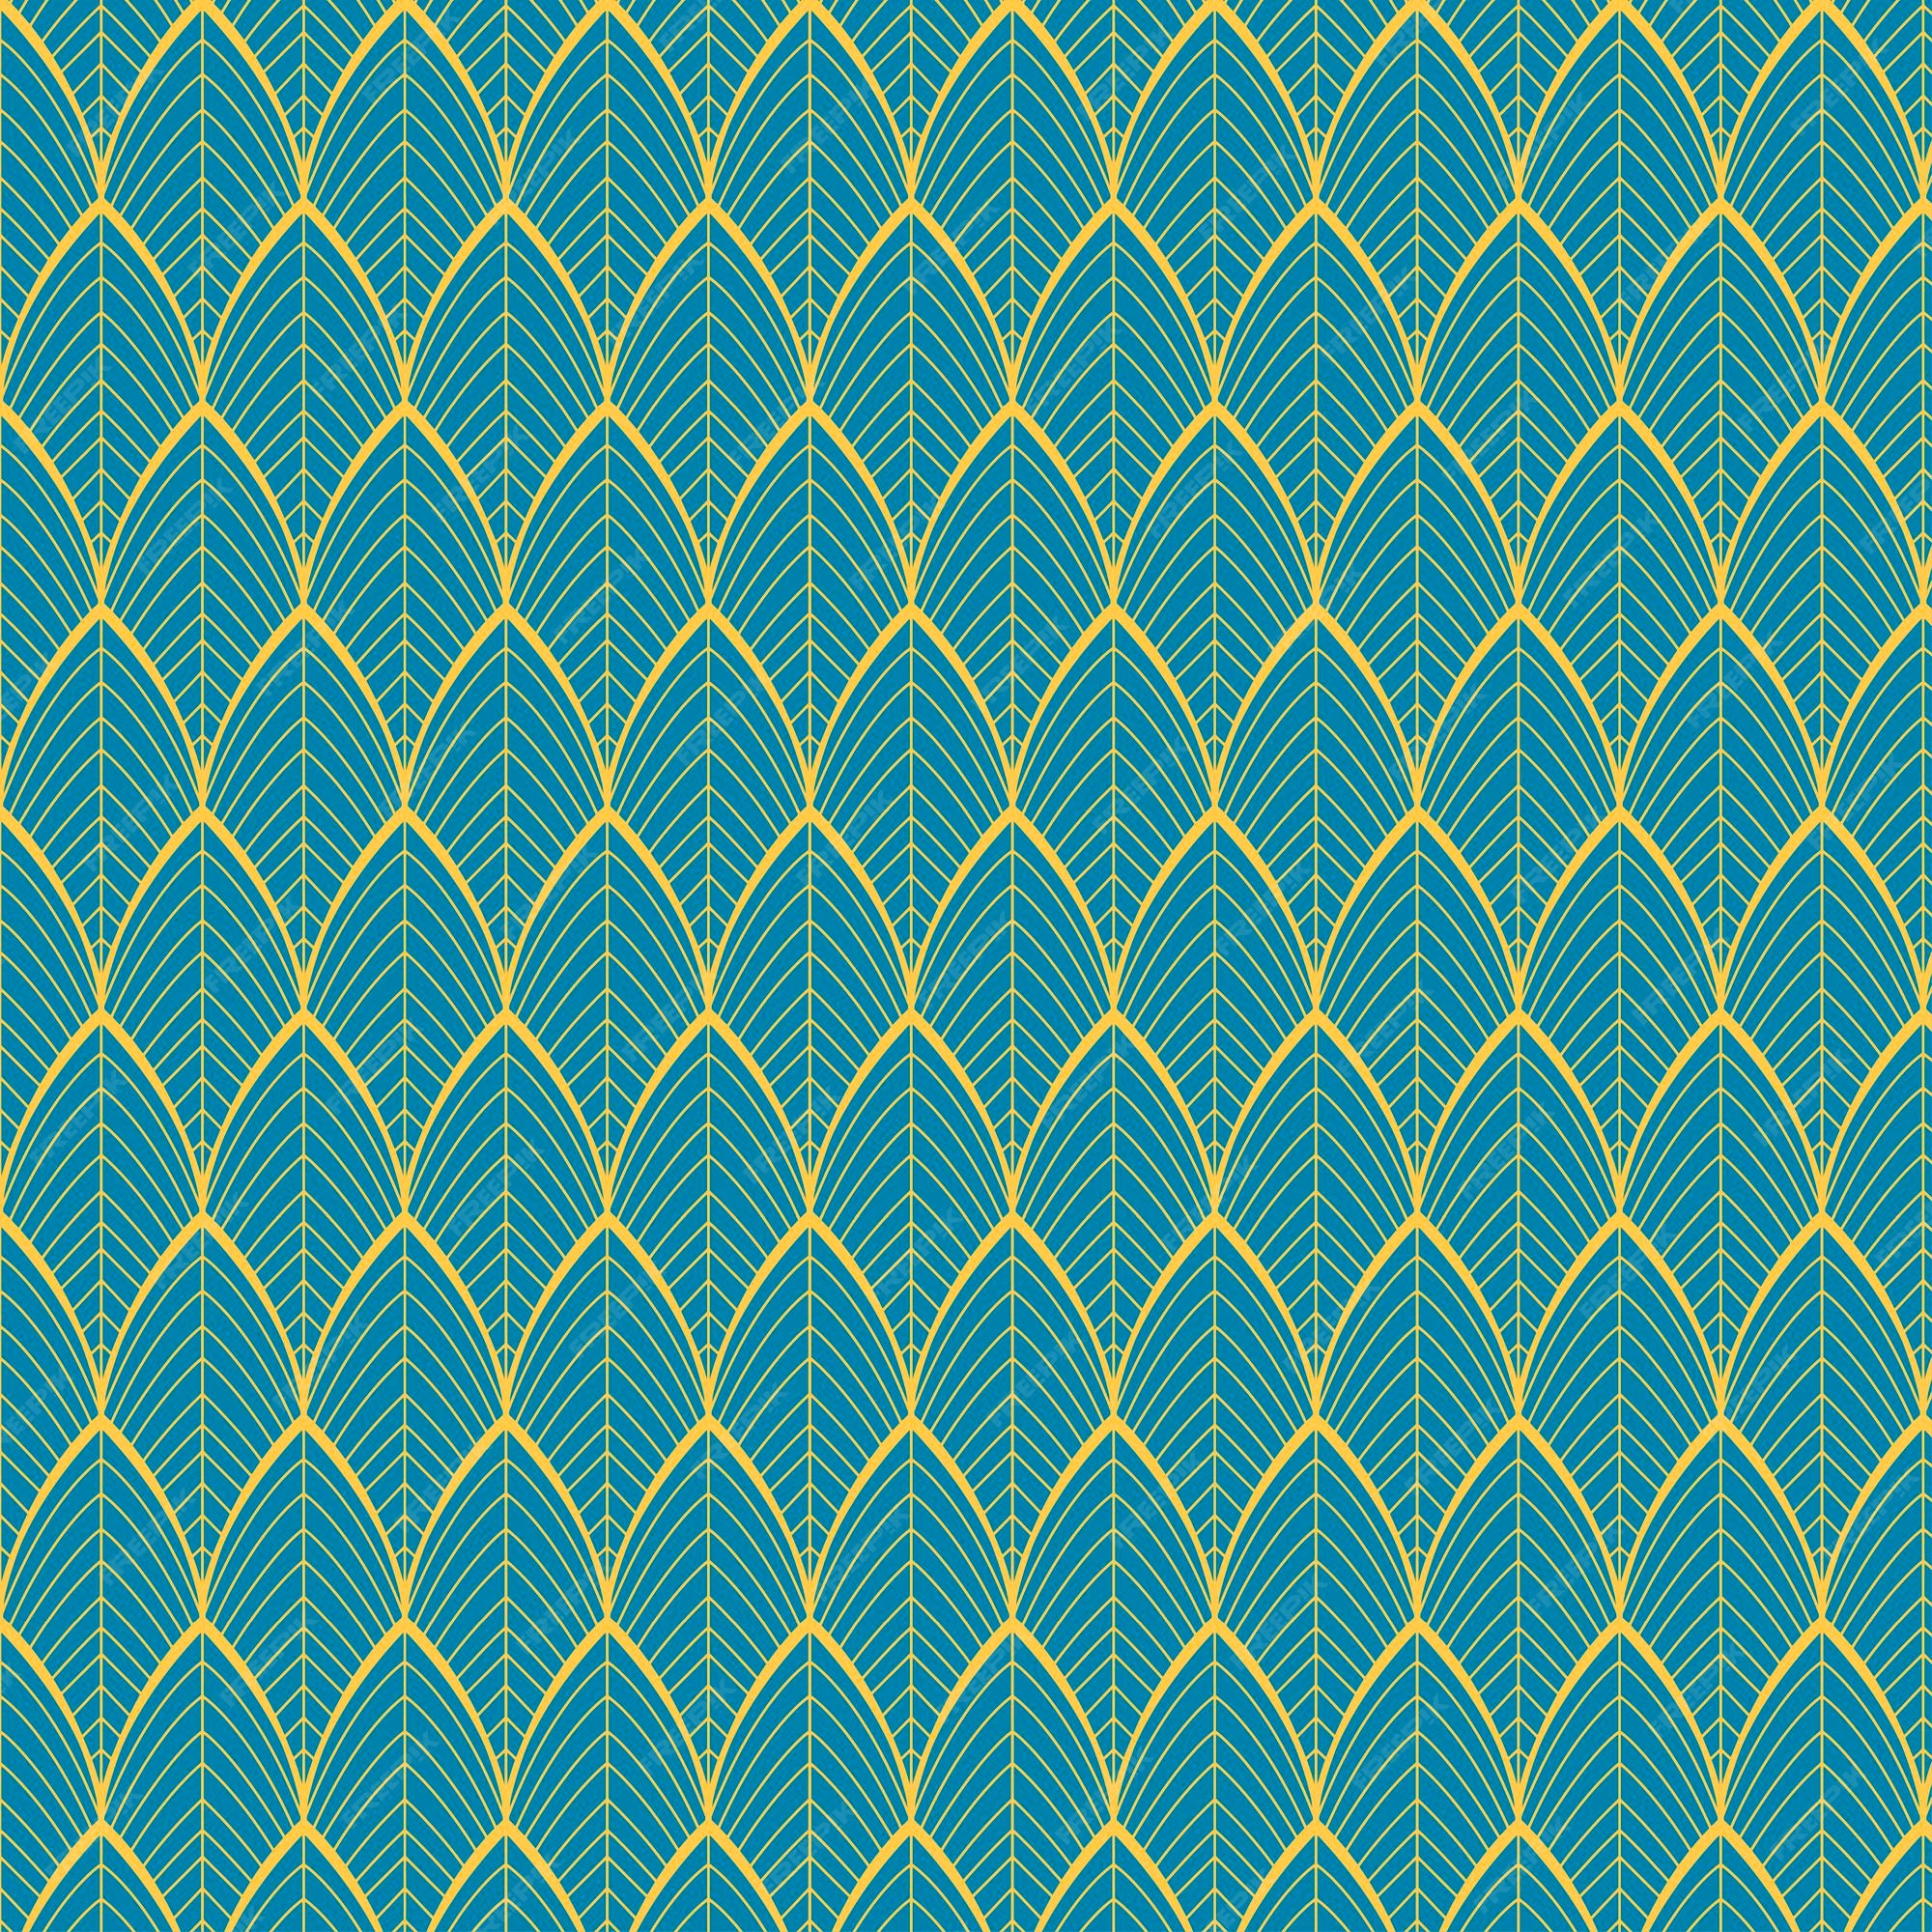 Patrón abstracto sin fisuras en turquesa y oro hermoso fondo de pantalla  ideal para uso de fondo | Vector Premium